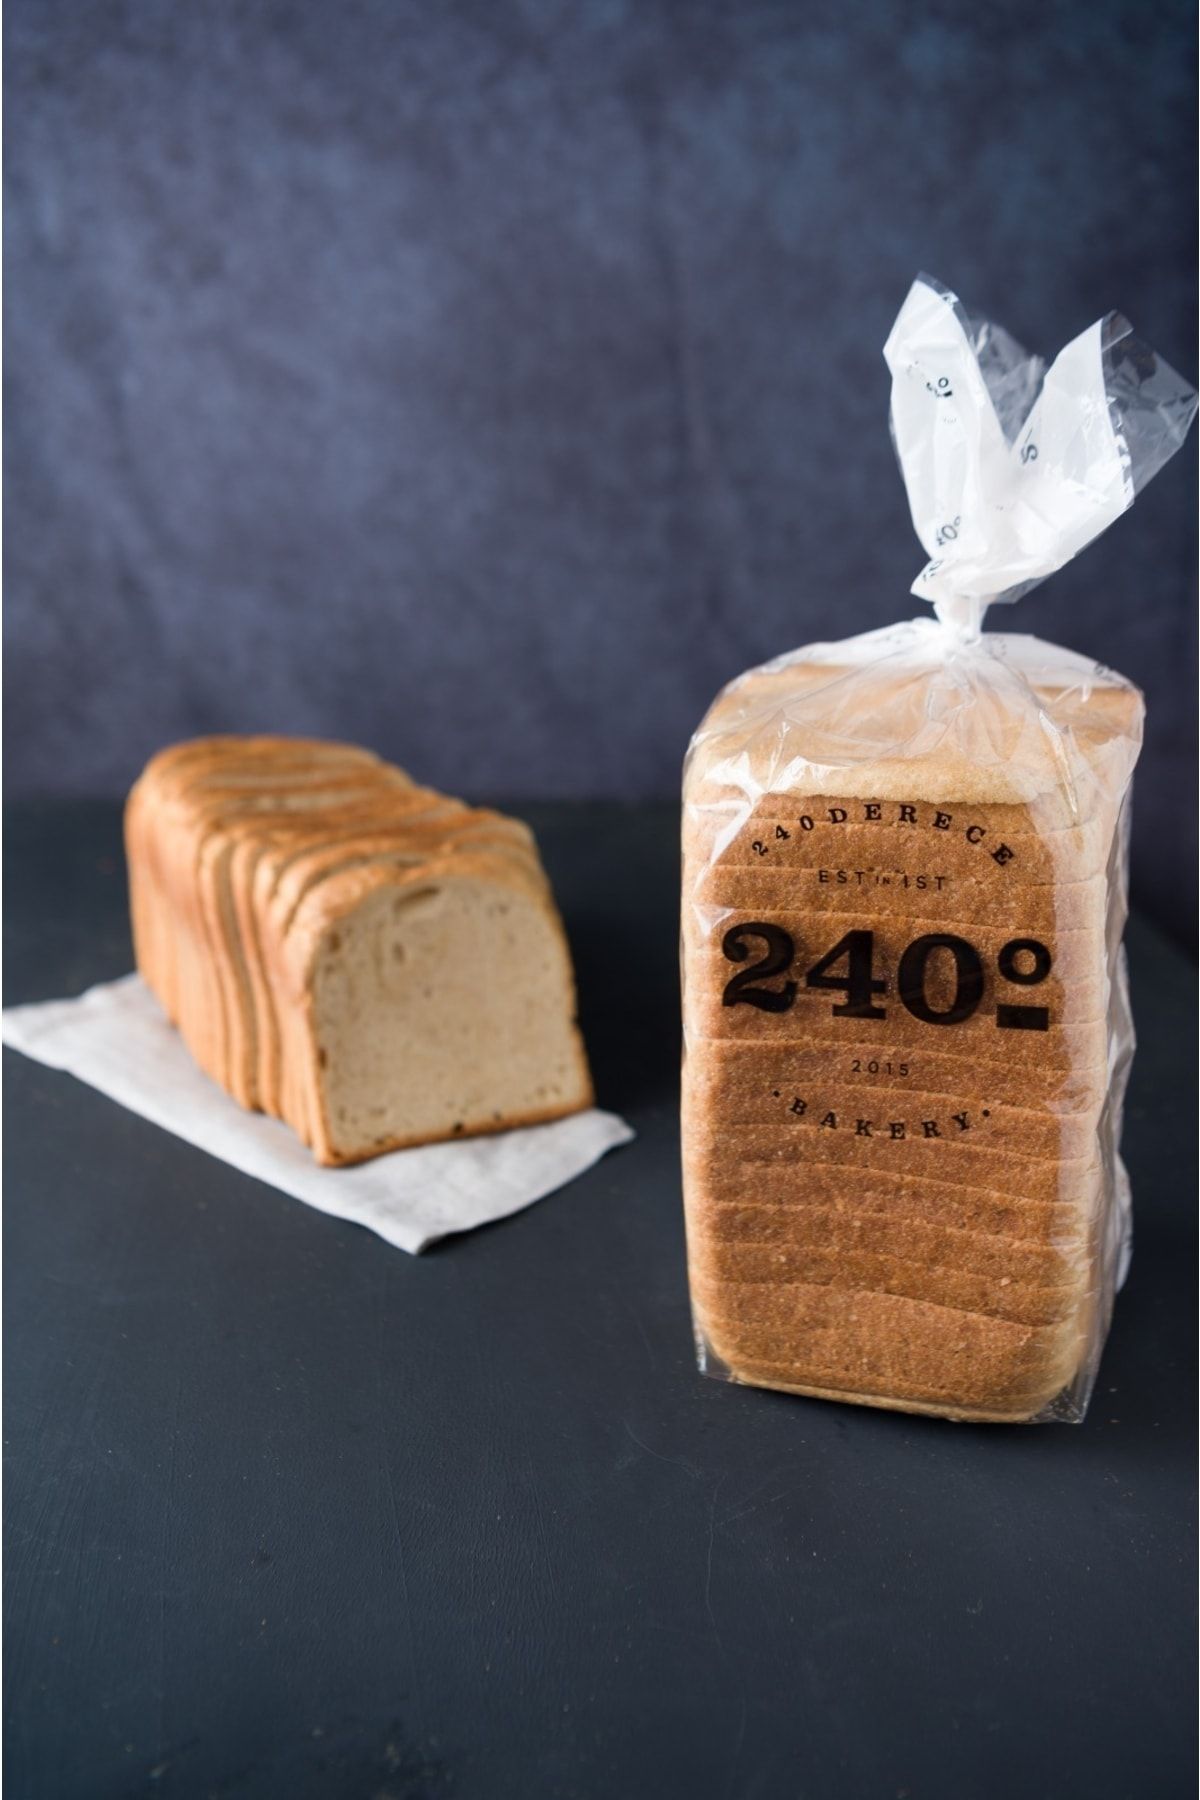 240derece Tost Ekmeği 1050 gr